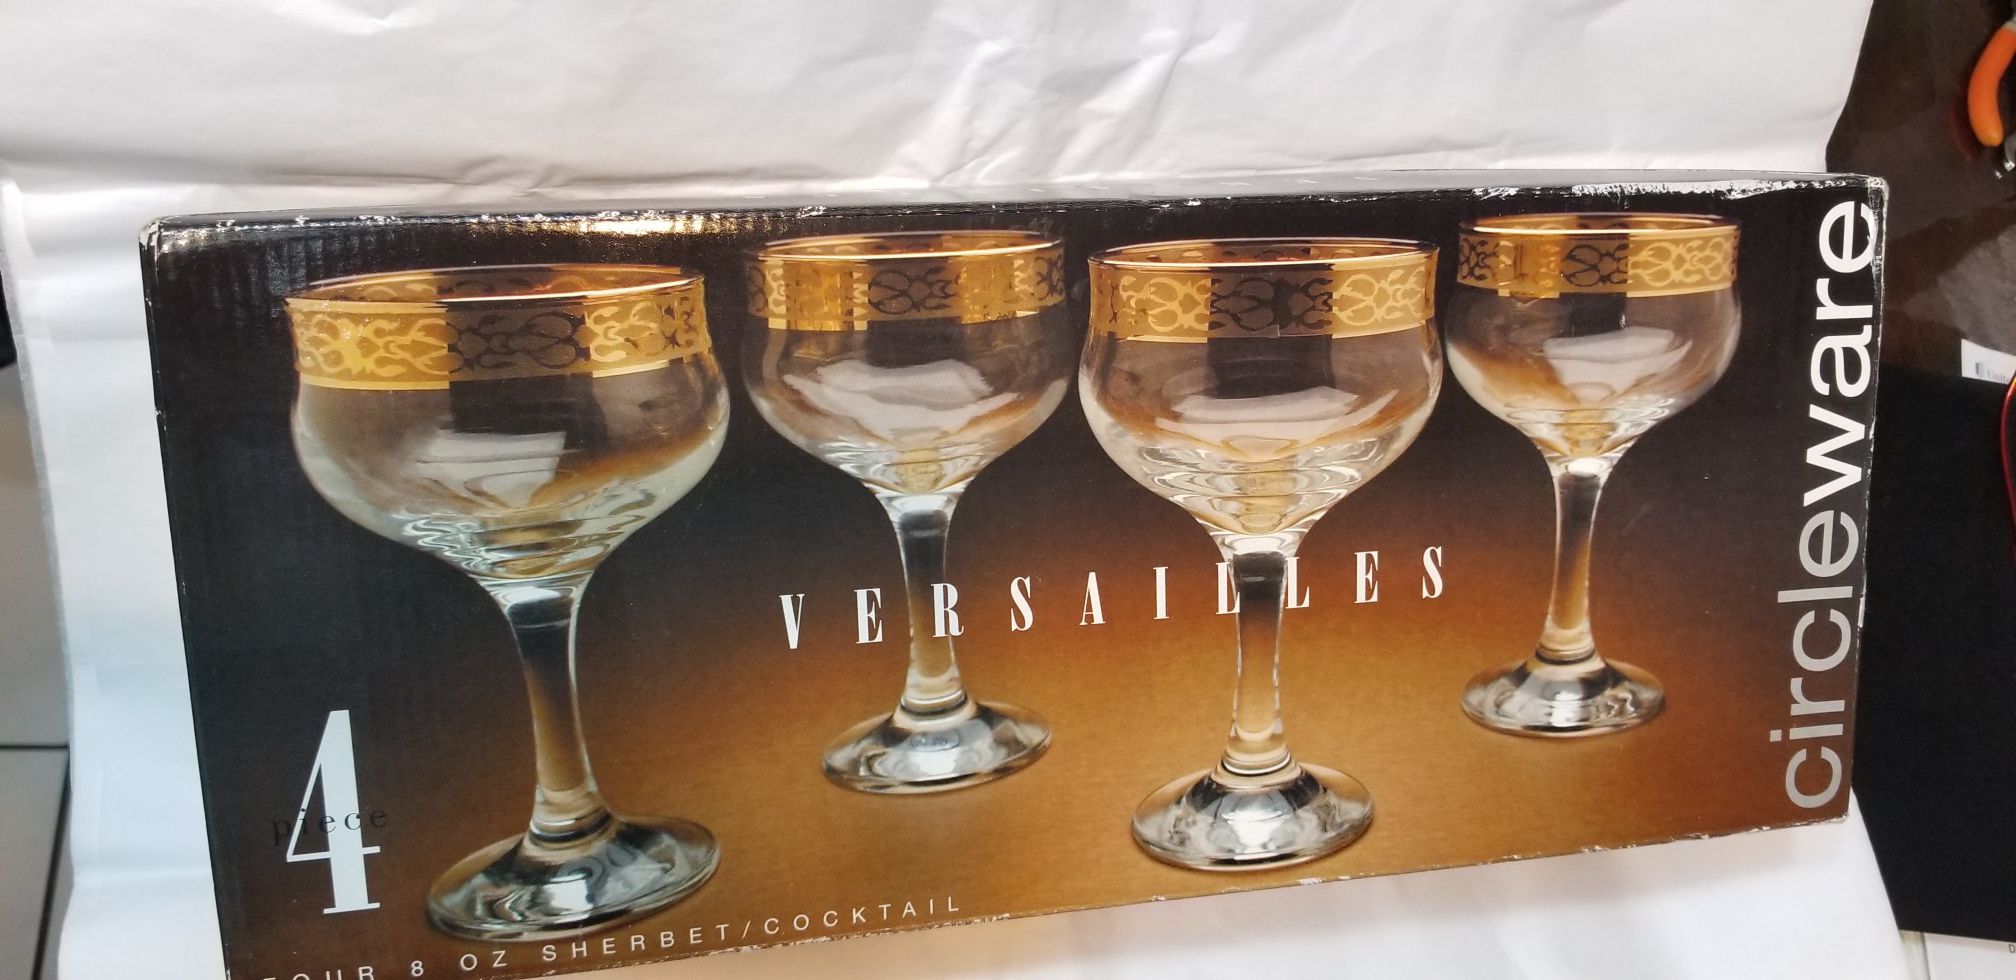 CIRCLEWARE VERSAILLES CRYSTAL SHERBET/COCKTAIL GLASSES